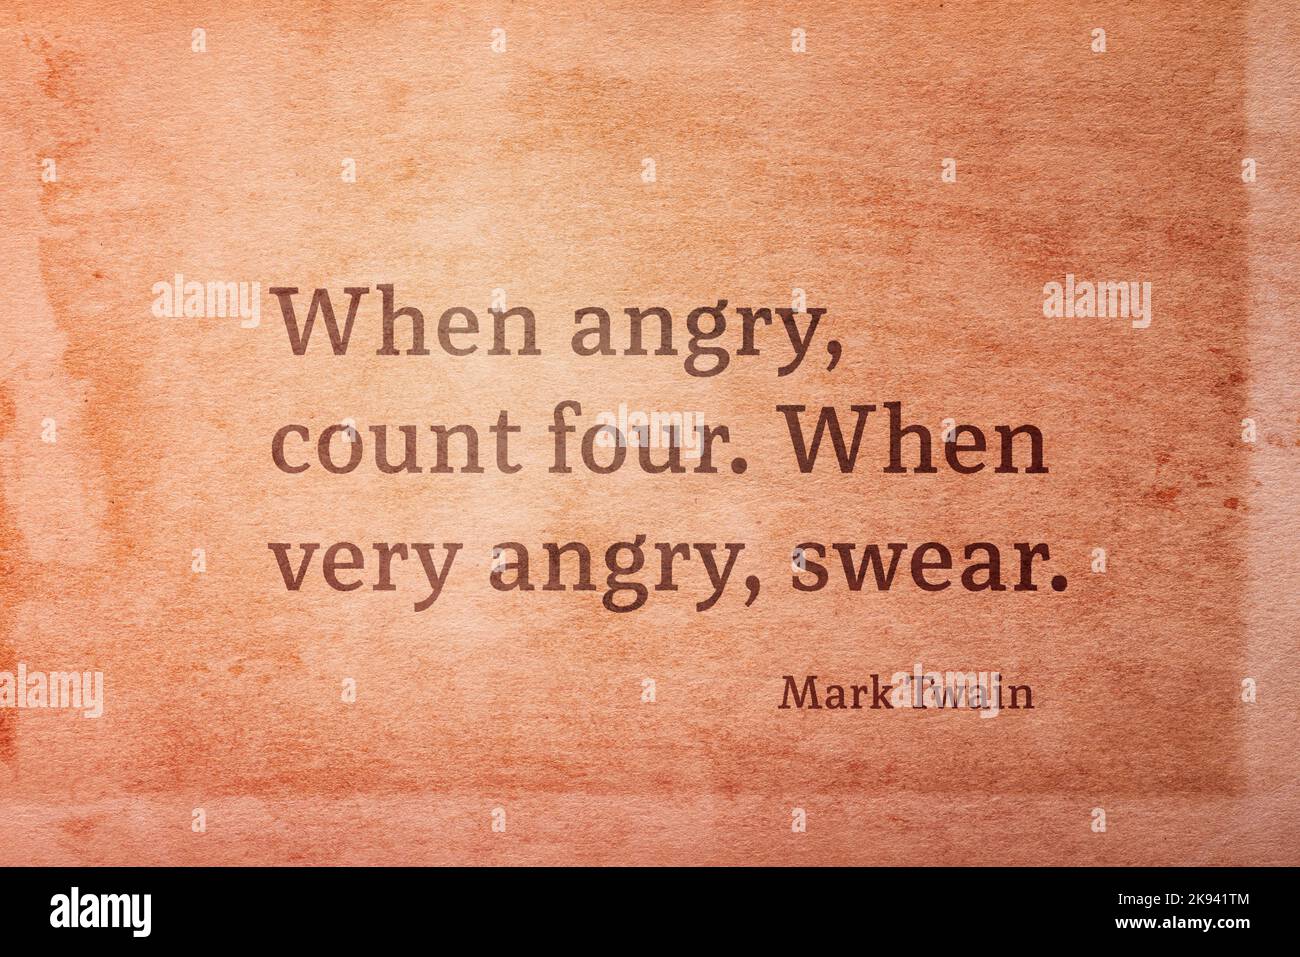 Quando arrabbiato, conta quattro. Quando molto arrabbiato, giuro - famoso scrittore americano Mark Twain citazione stampata su carta grunge vintage Foto Stock